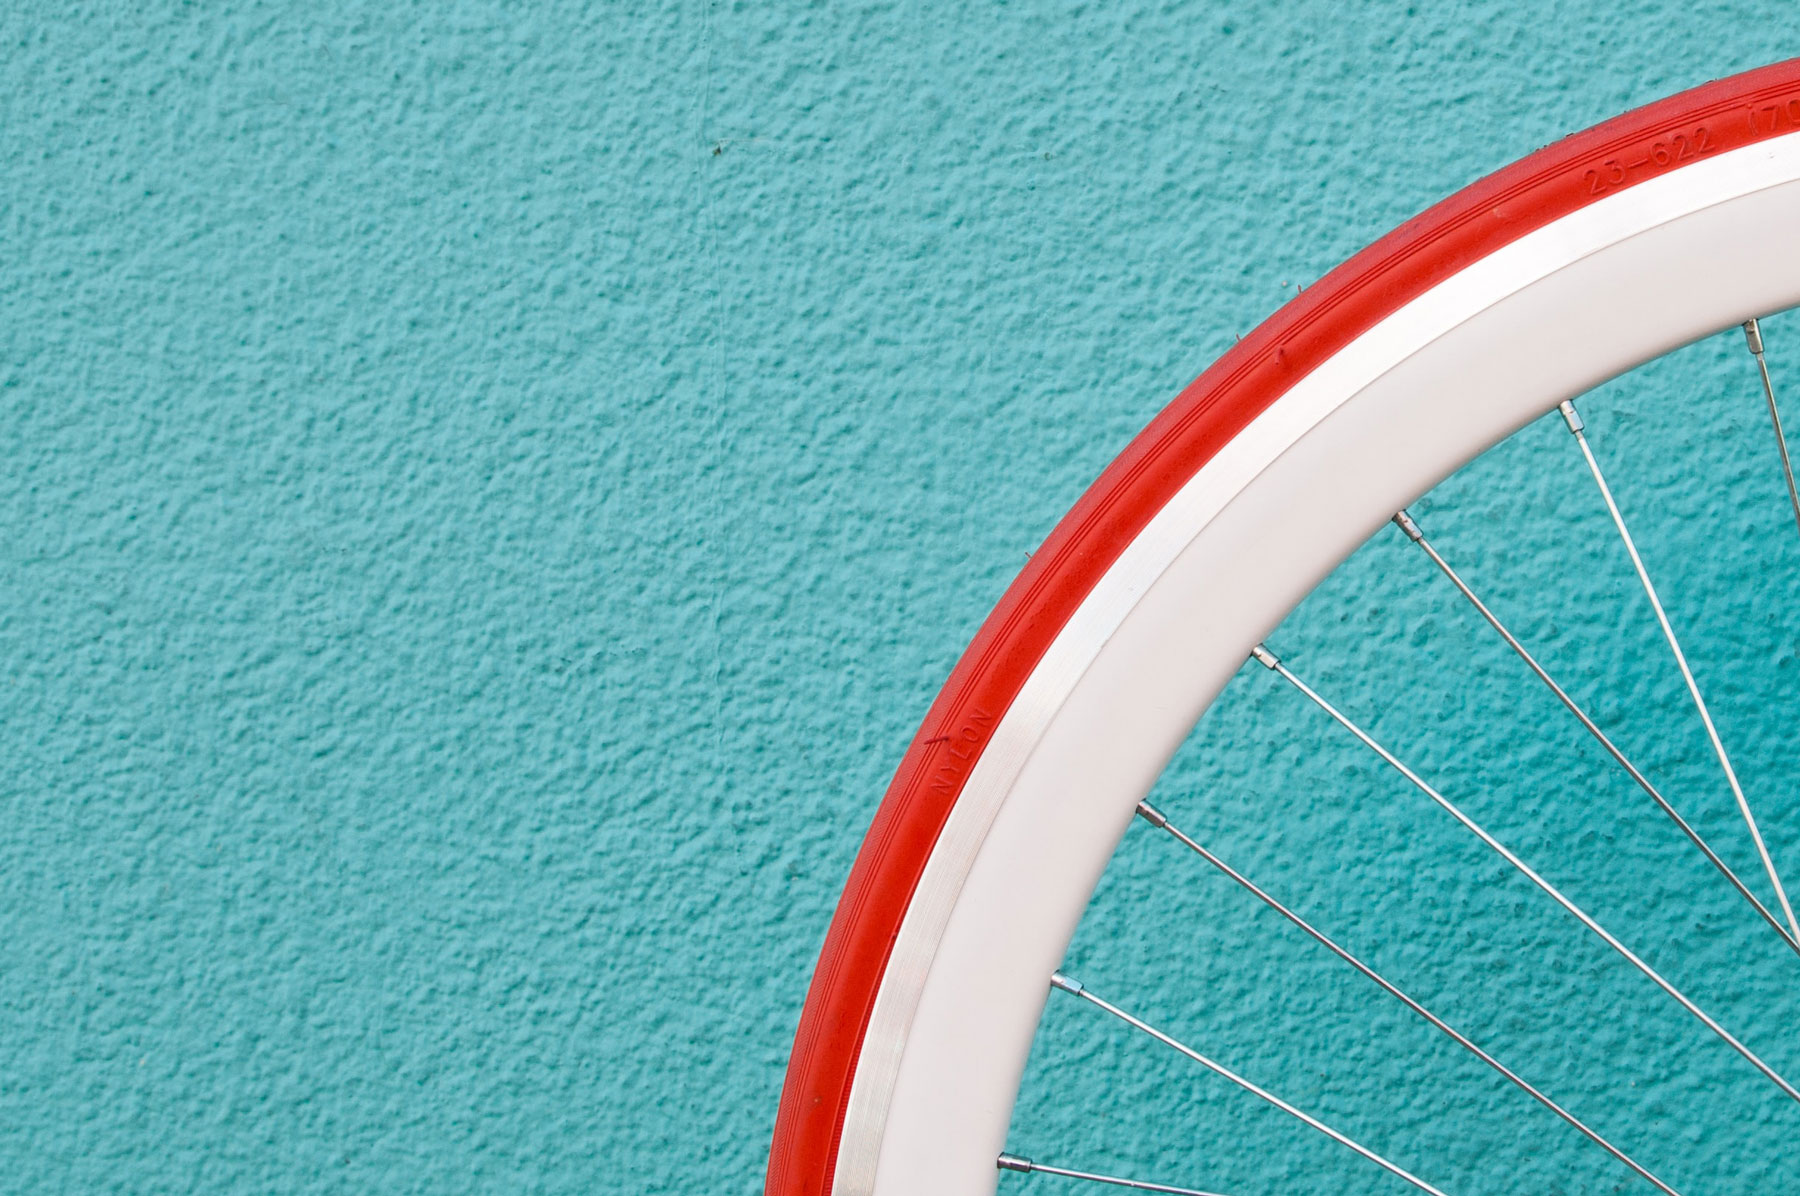 Roue de vélo rouge et blanche sur fond turquoise